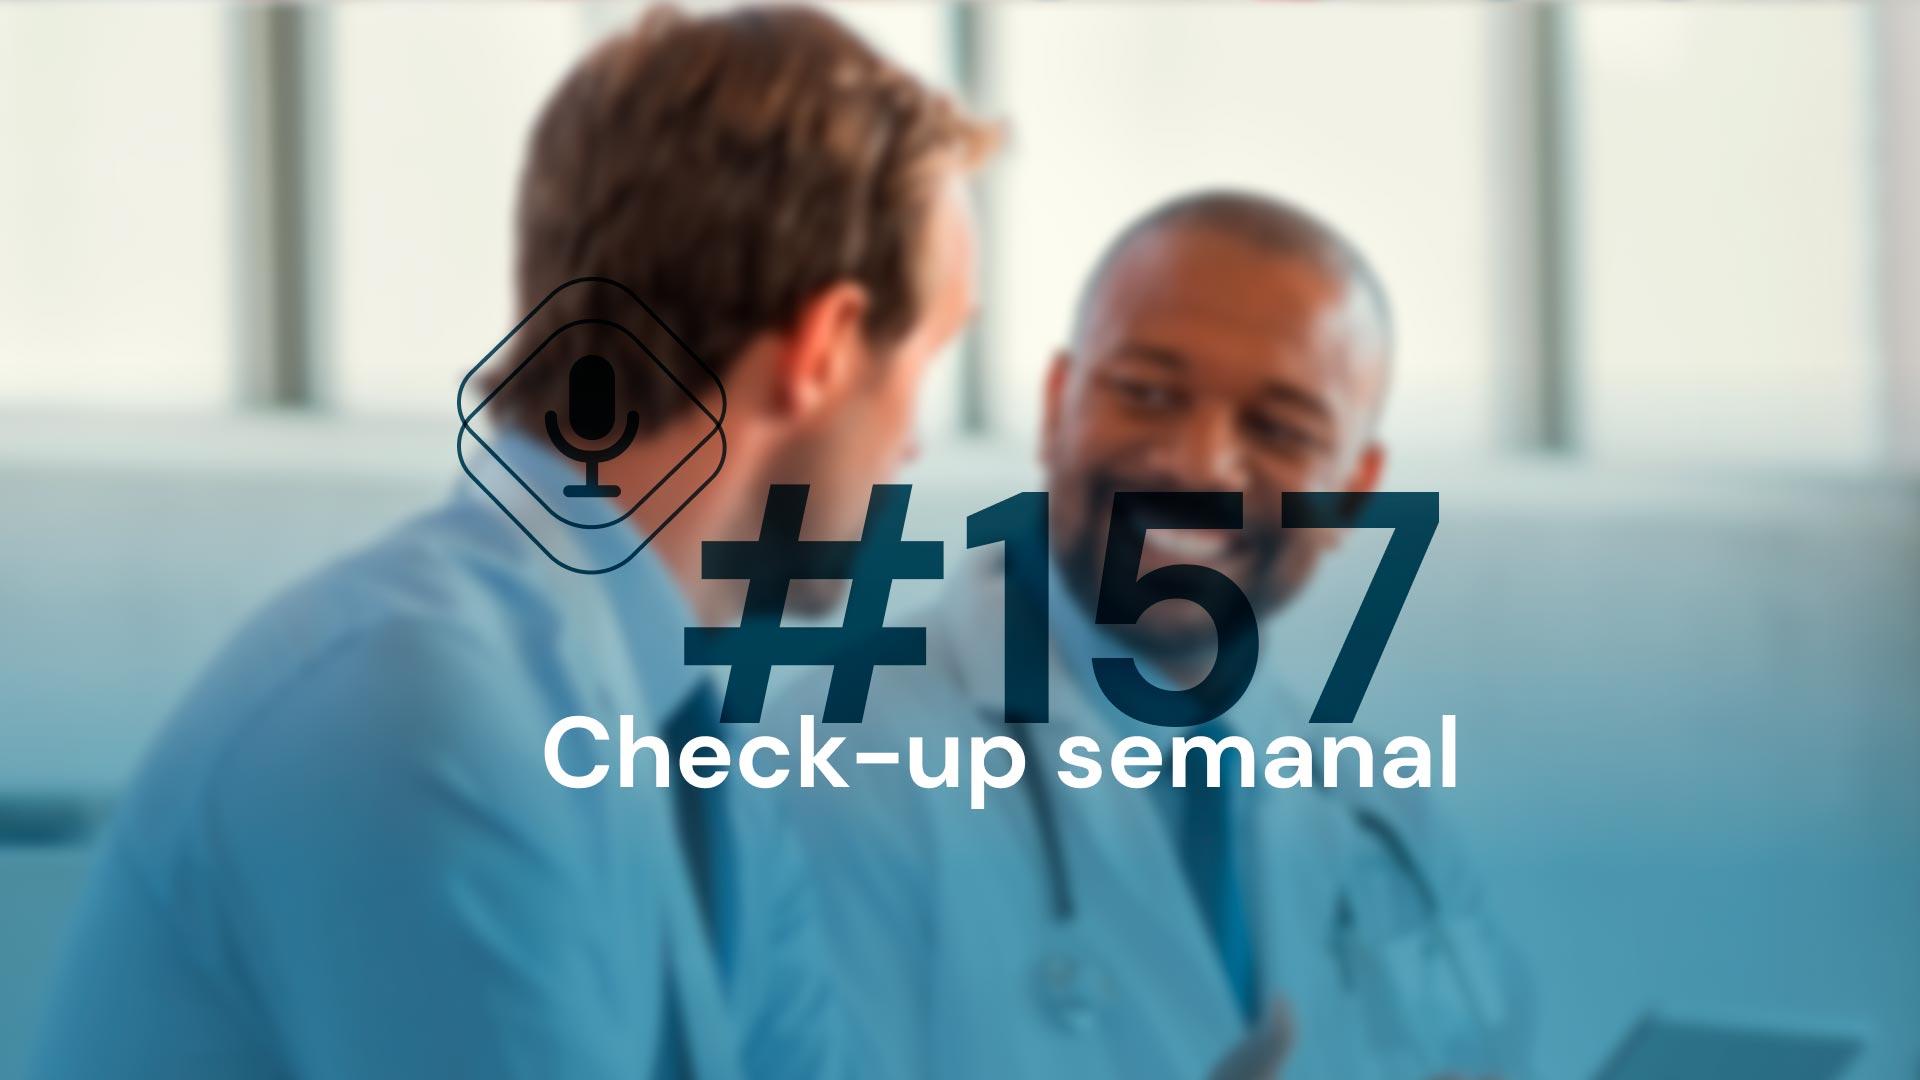 Check-up Semanal: FA em pacientes com IC, covid longa e mais! [podcast]